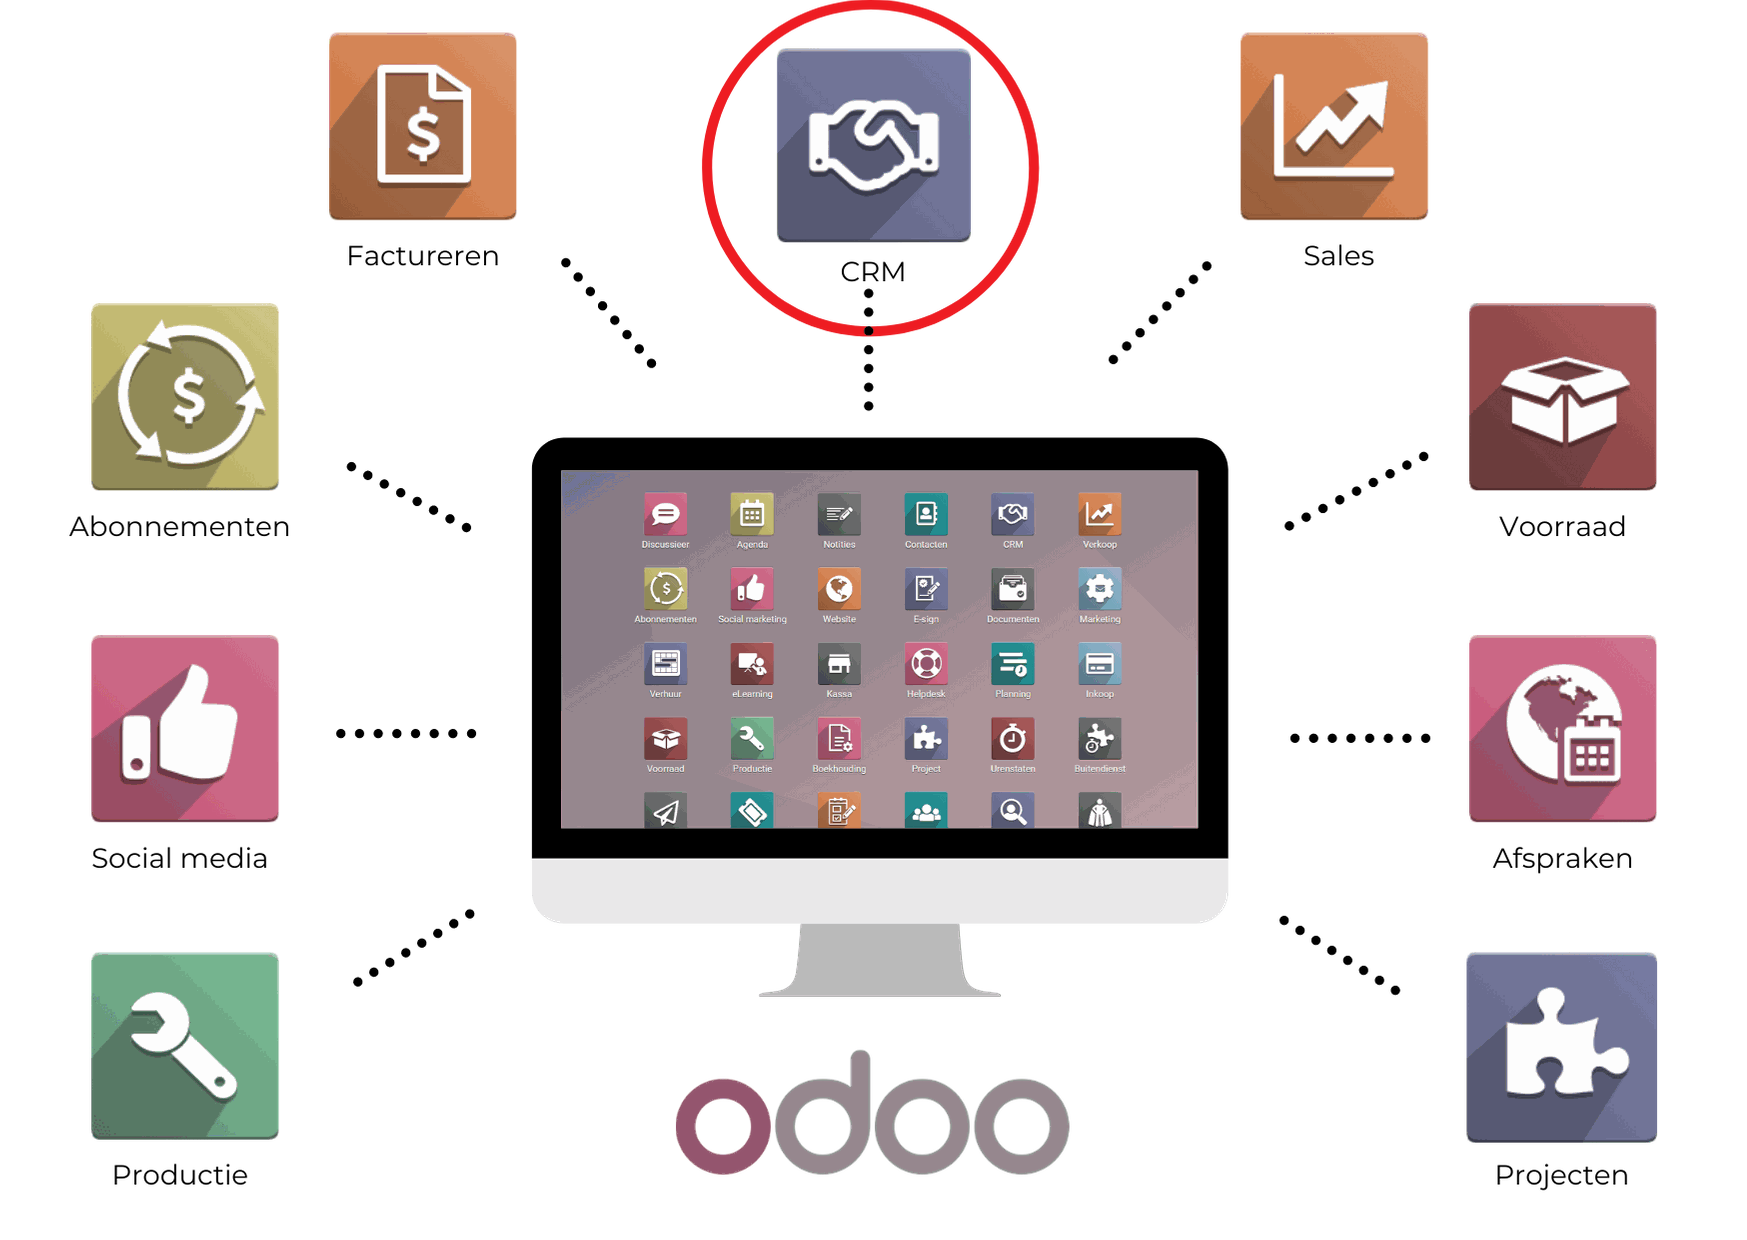 Odoo apps combinatie